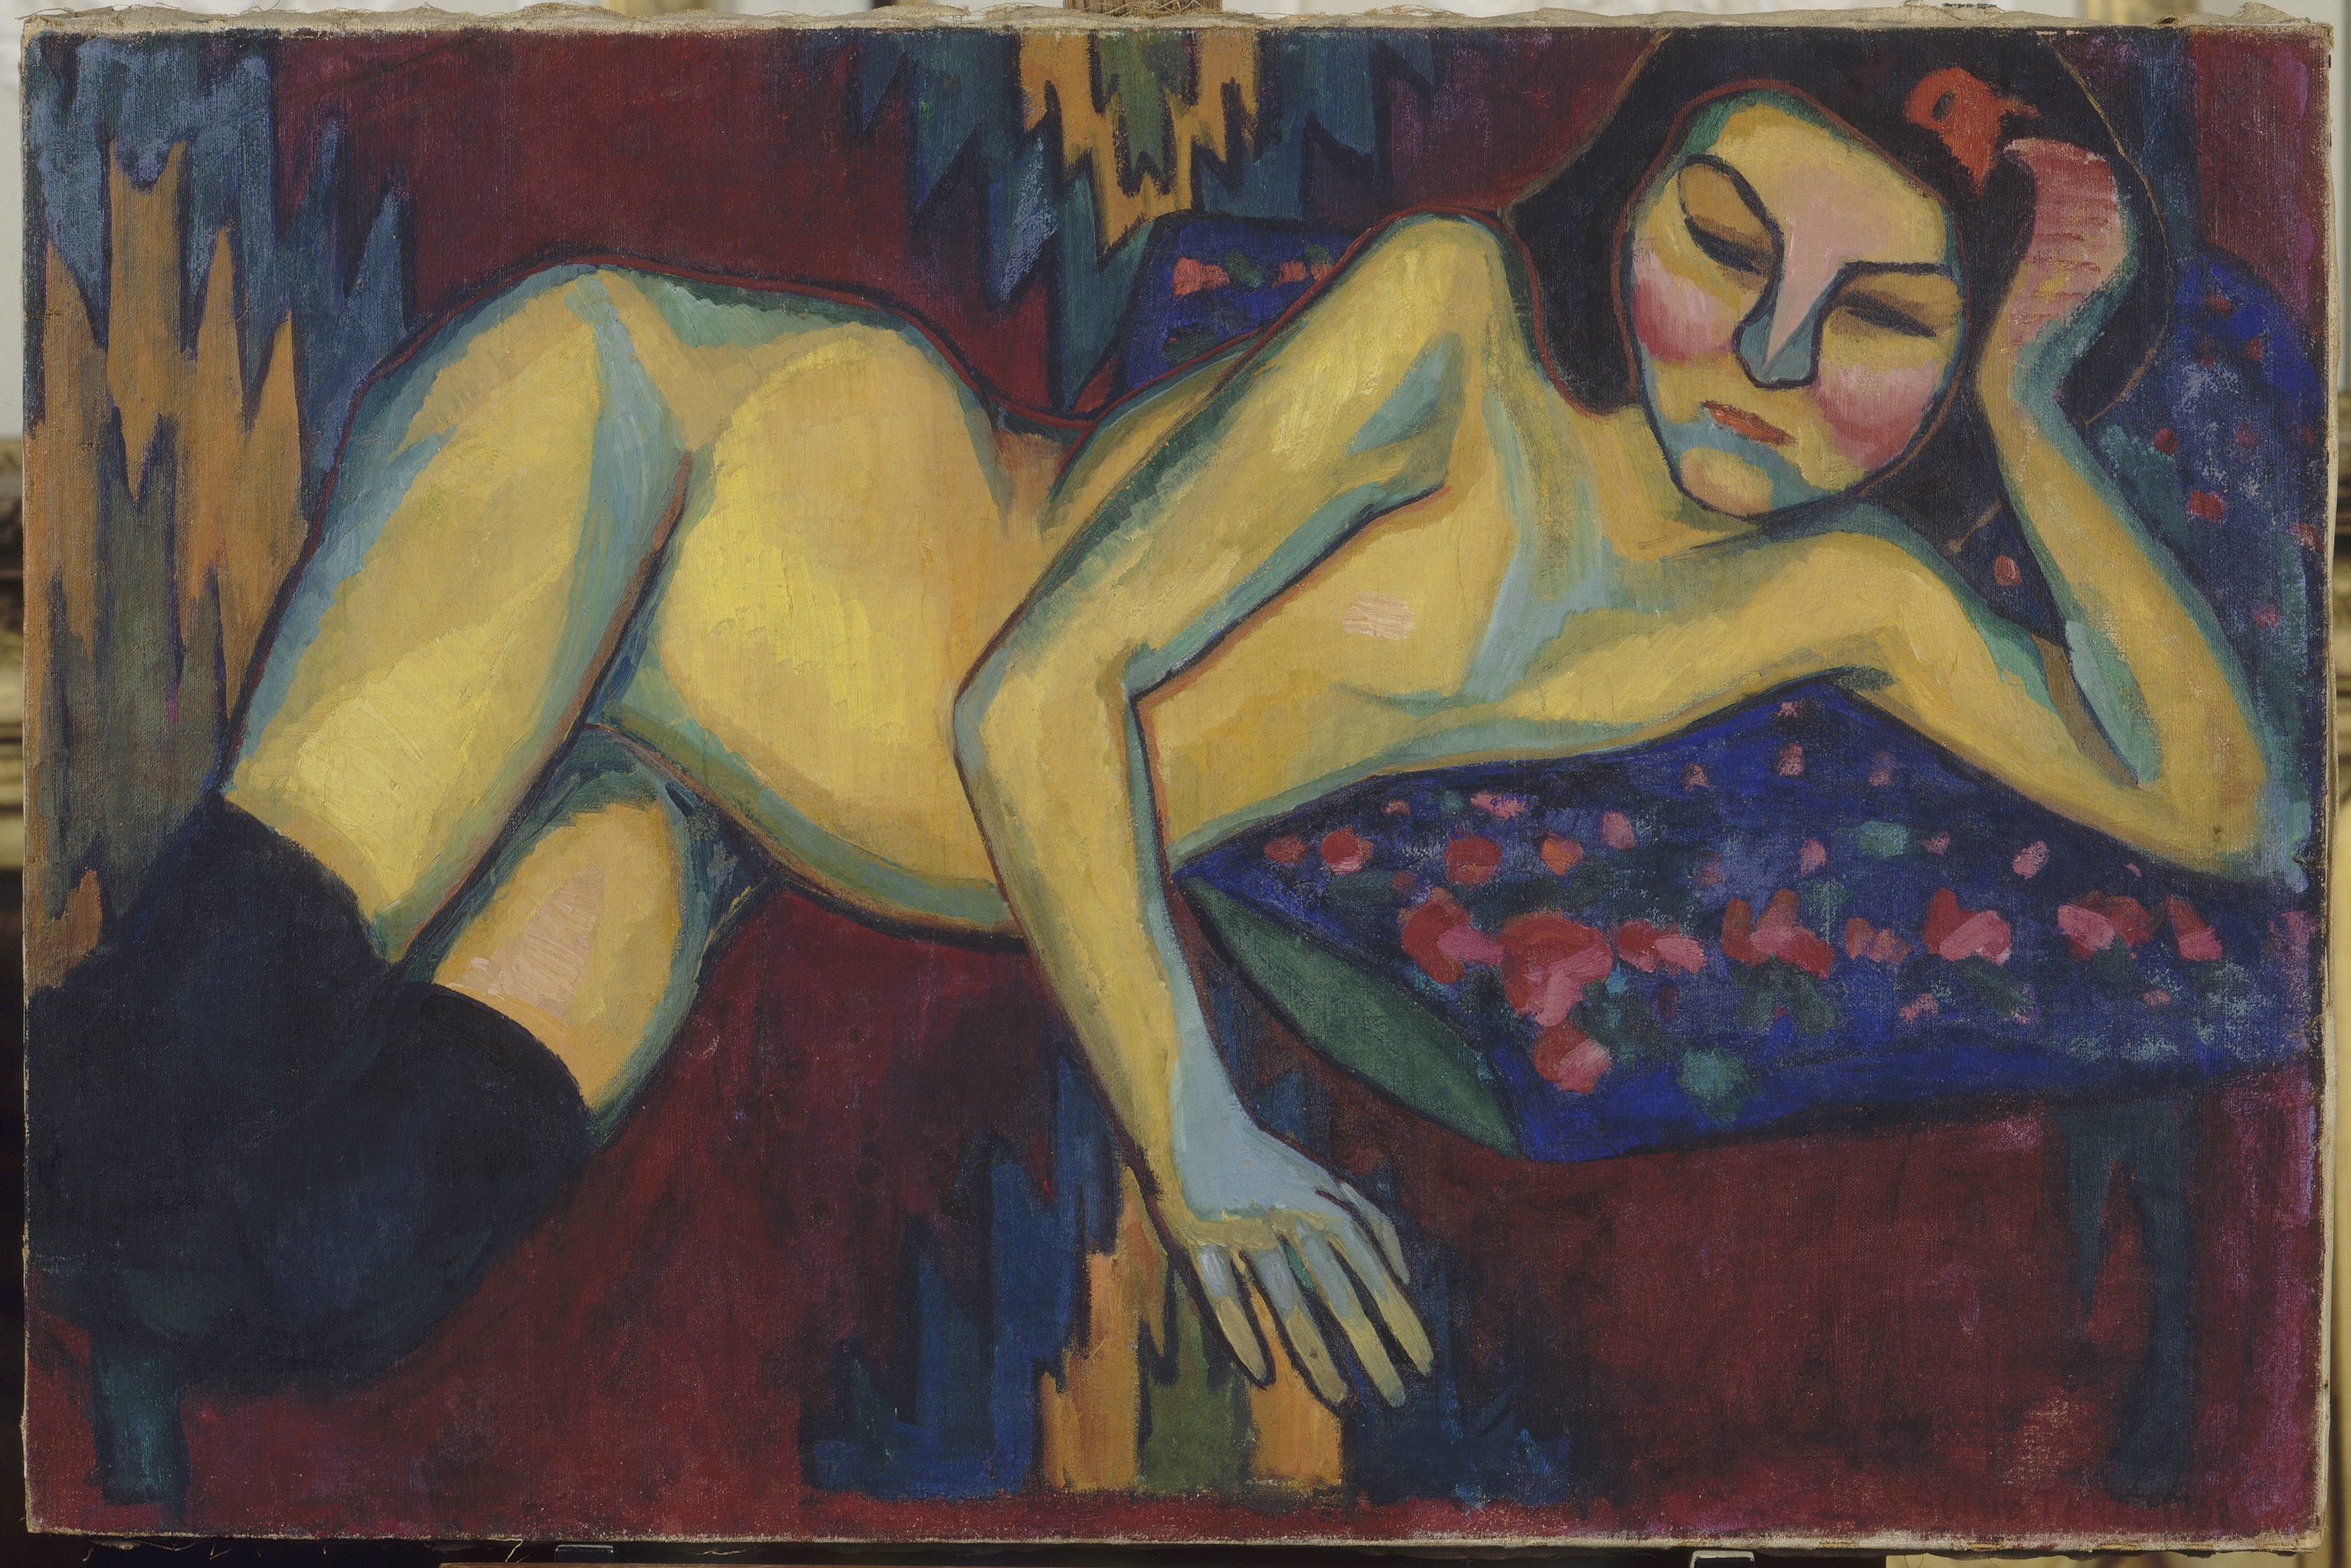 Yellow Nude by Sonia Delaunay - 1908 - 65 x 98,3 cm Musée d'Arts de Nantes